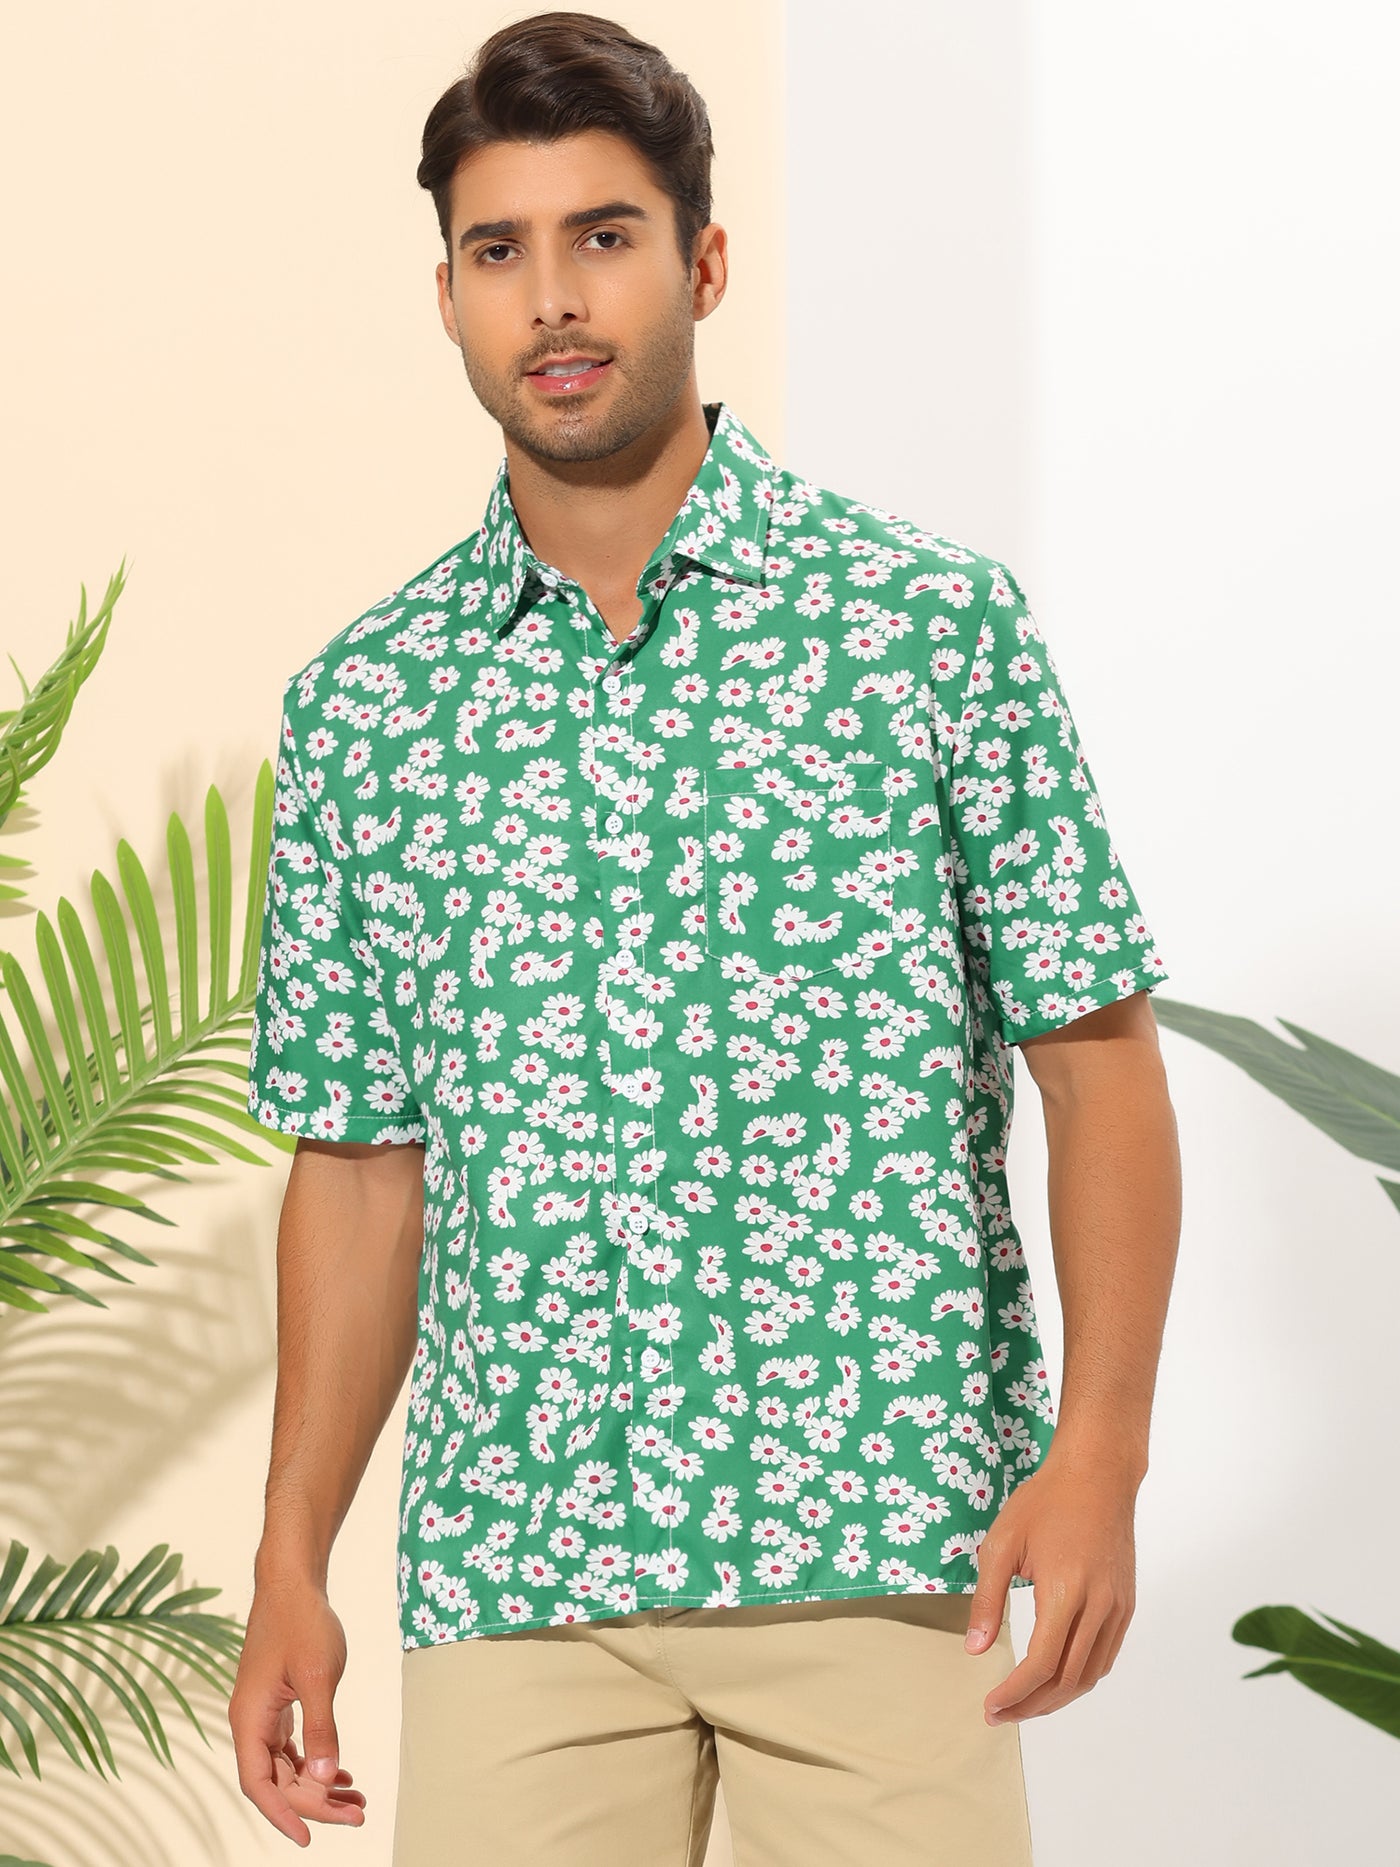 Bublédon Daisy Flower Shirts for Men's Button Short Sleeve Summer Hawaiian Beach Floral Shirt